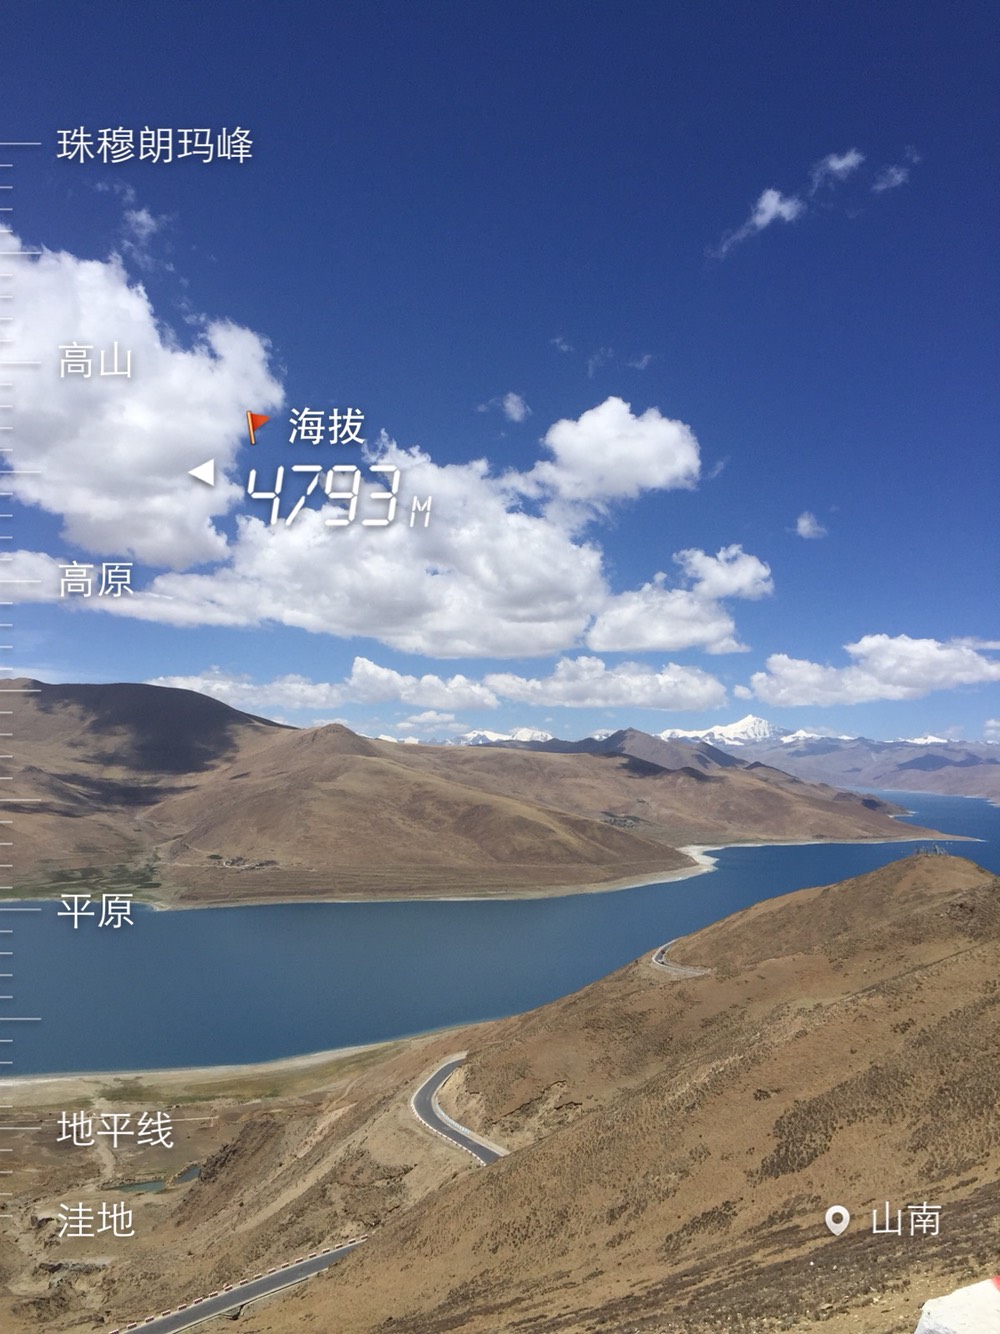 羊卓雍措（YamdrokTso），简称羊湖，藏语意为“碧玉湖”，是西藏